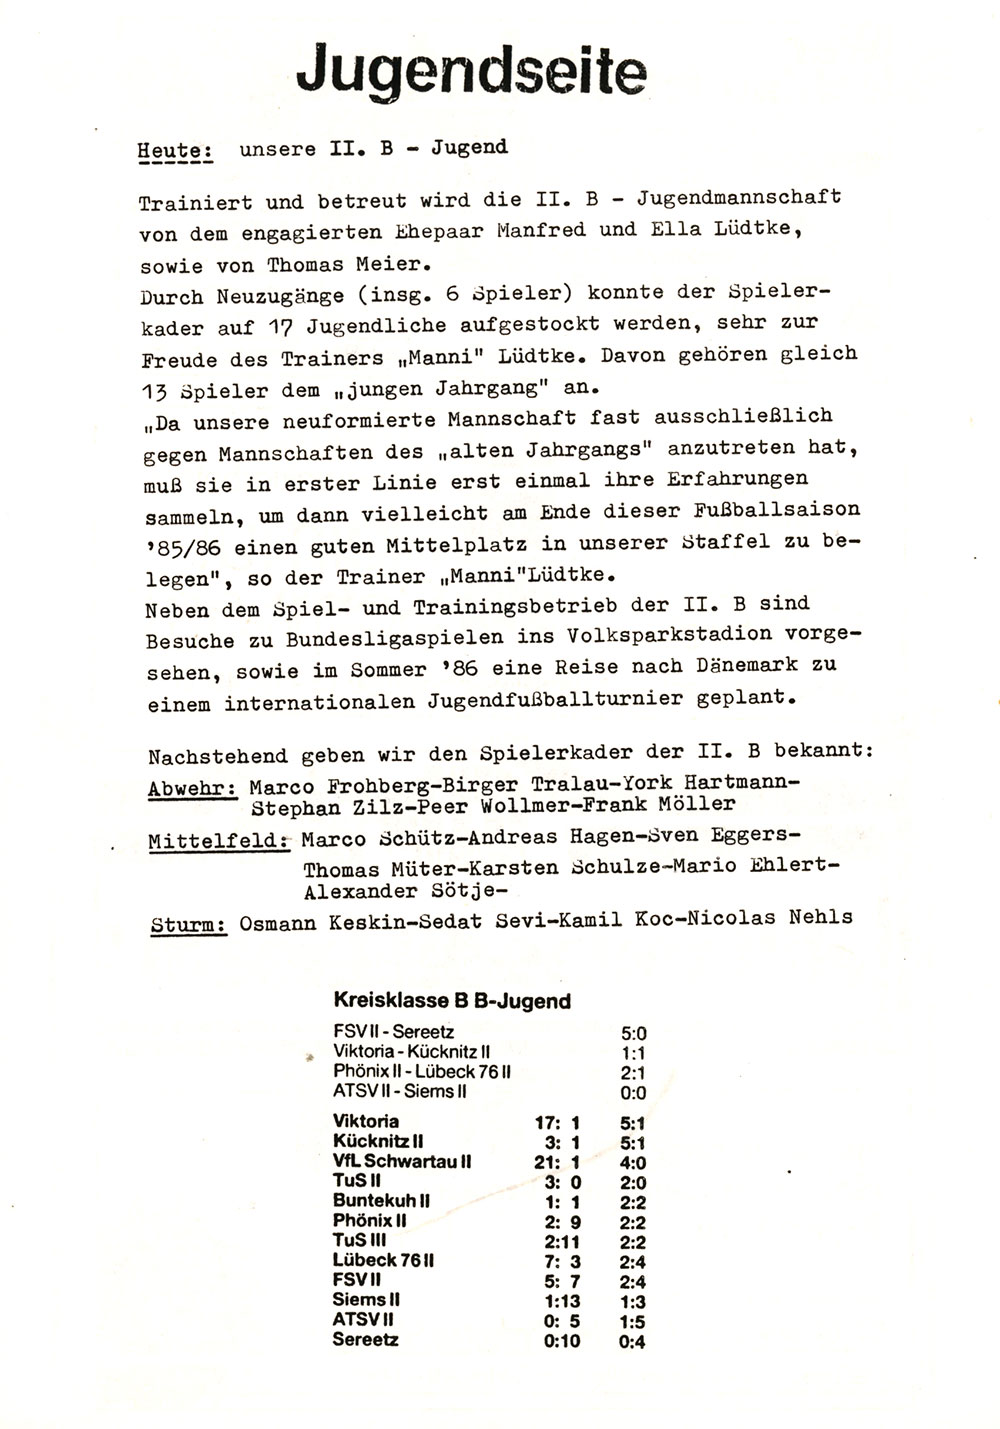 Der PHÖNIX Express v. 22.9.1985